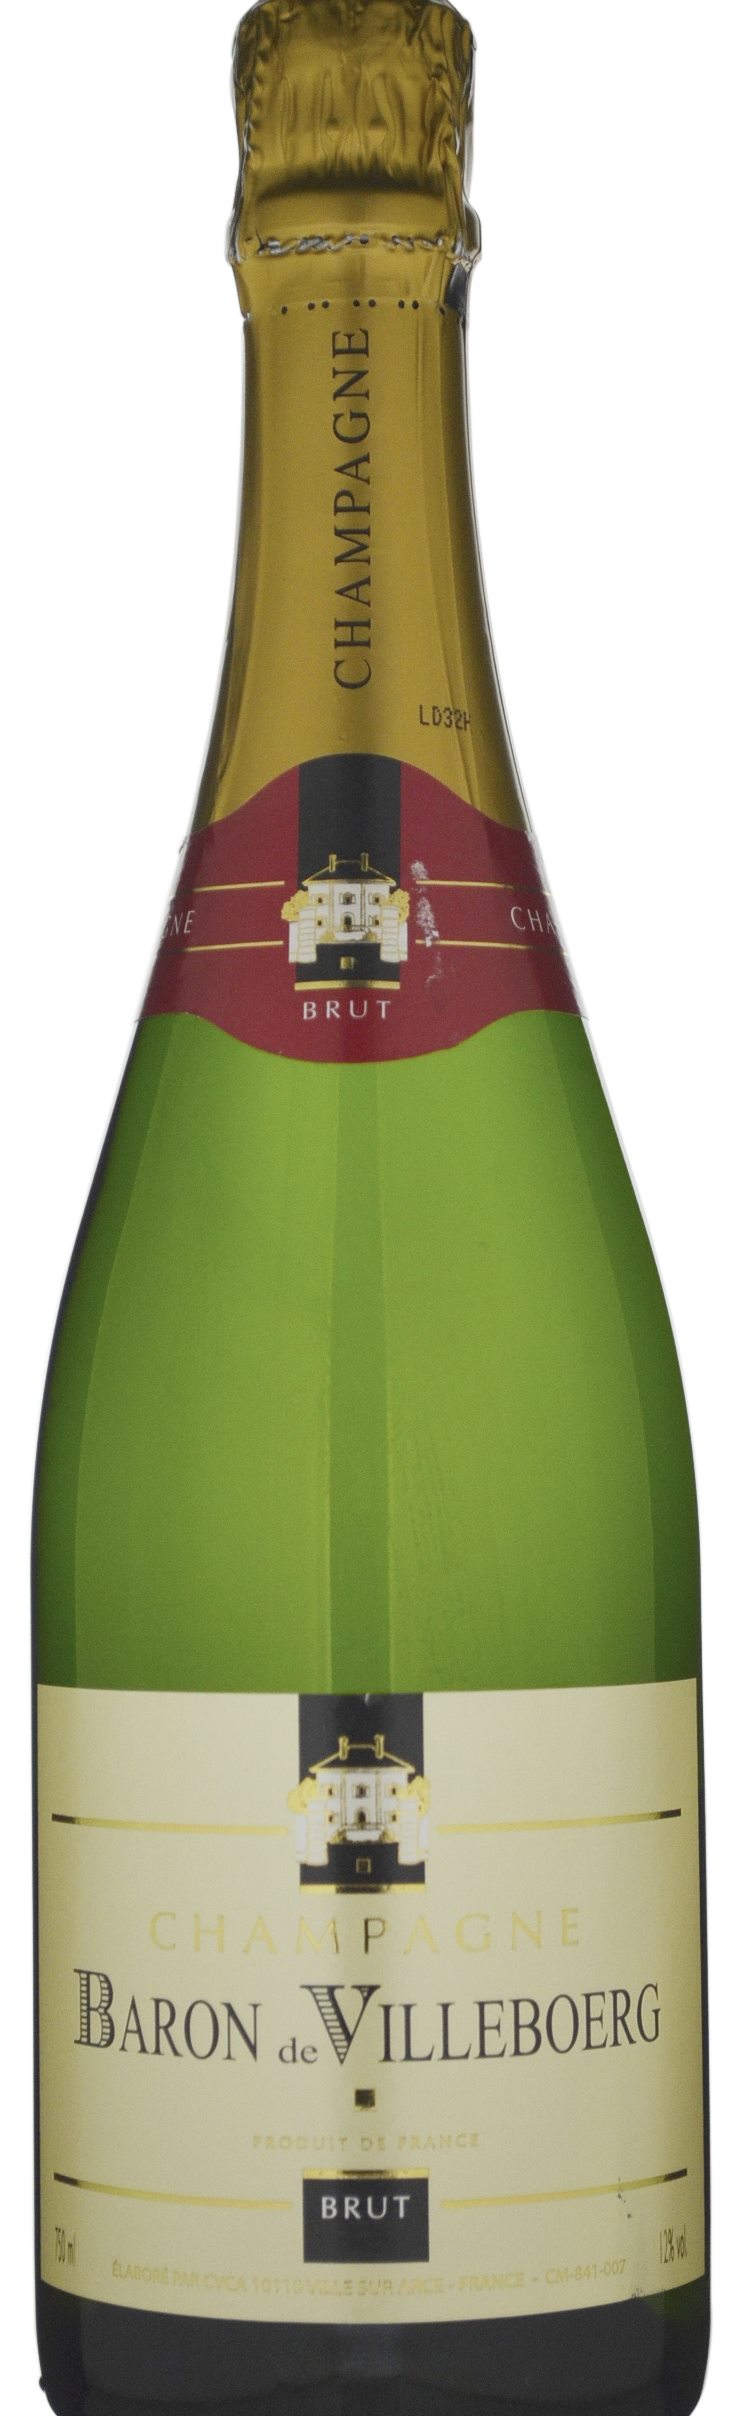 Baron de Villeboerg Brut Champagne N/V